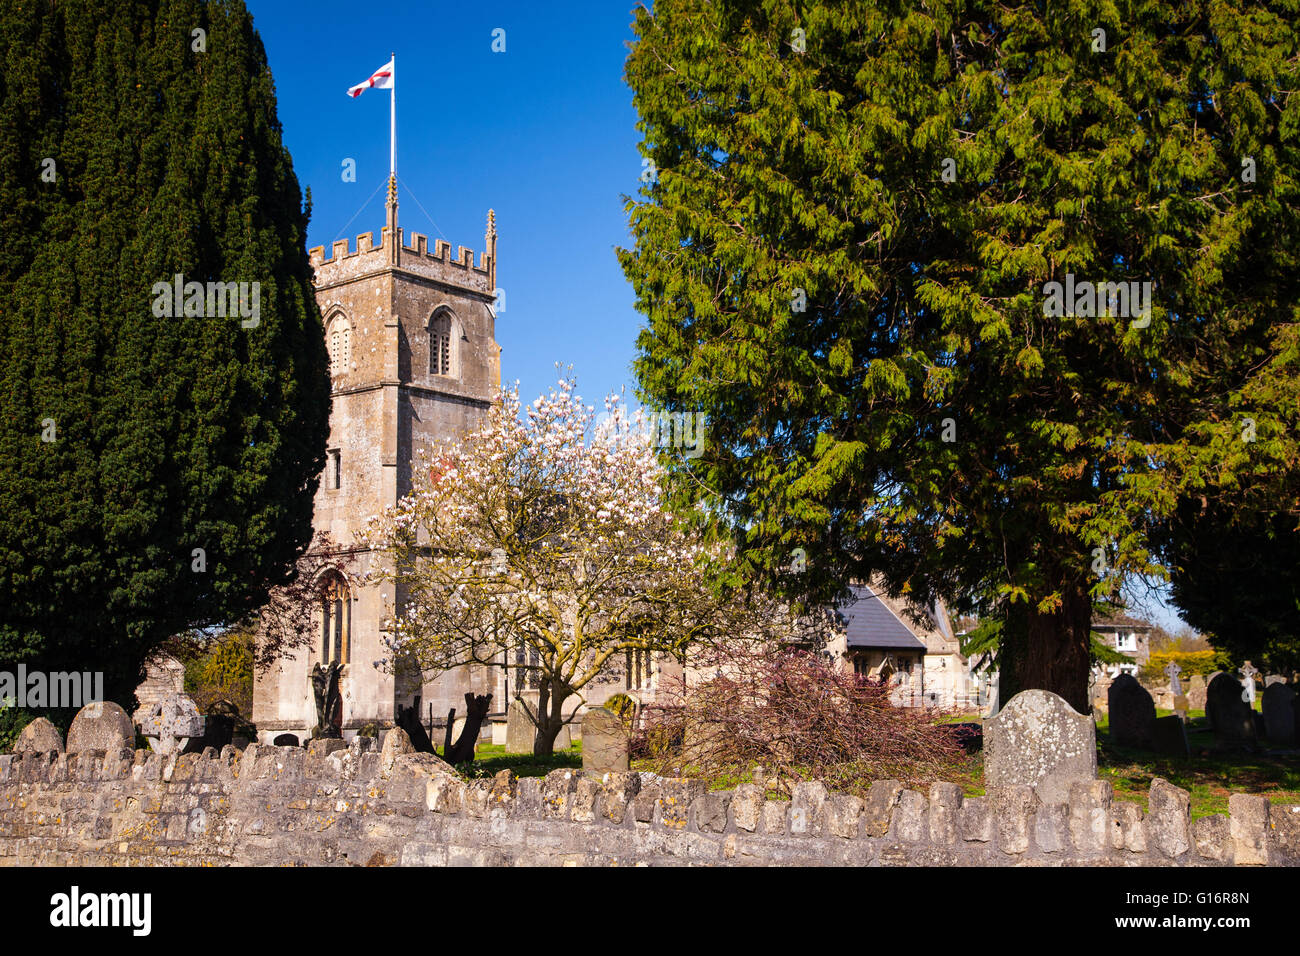 St. Nicholas Church, Bathampton, in der Nähe von Bath, Somerset, UK Stockfoto